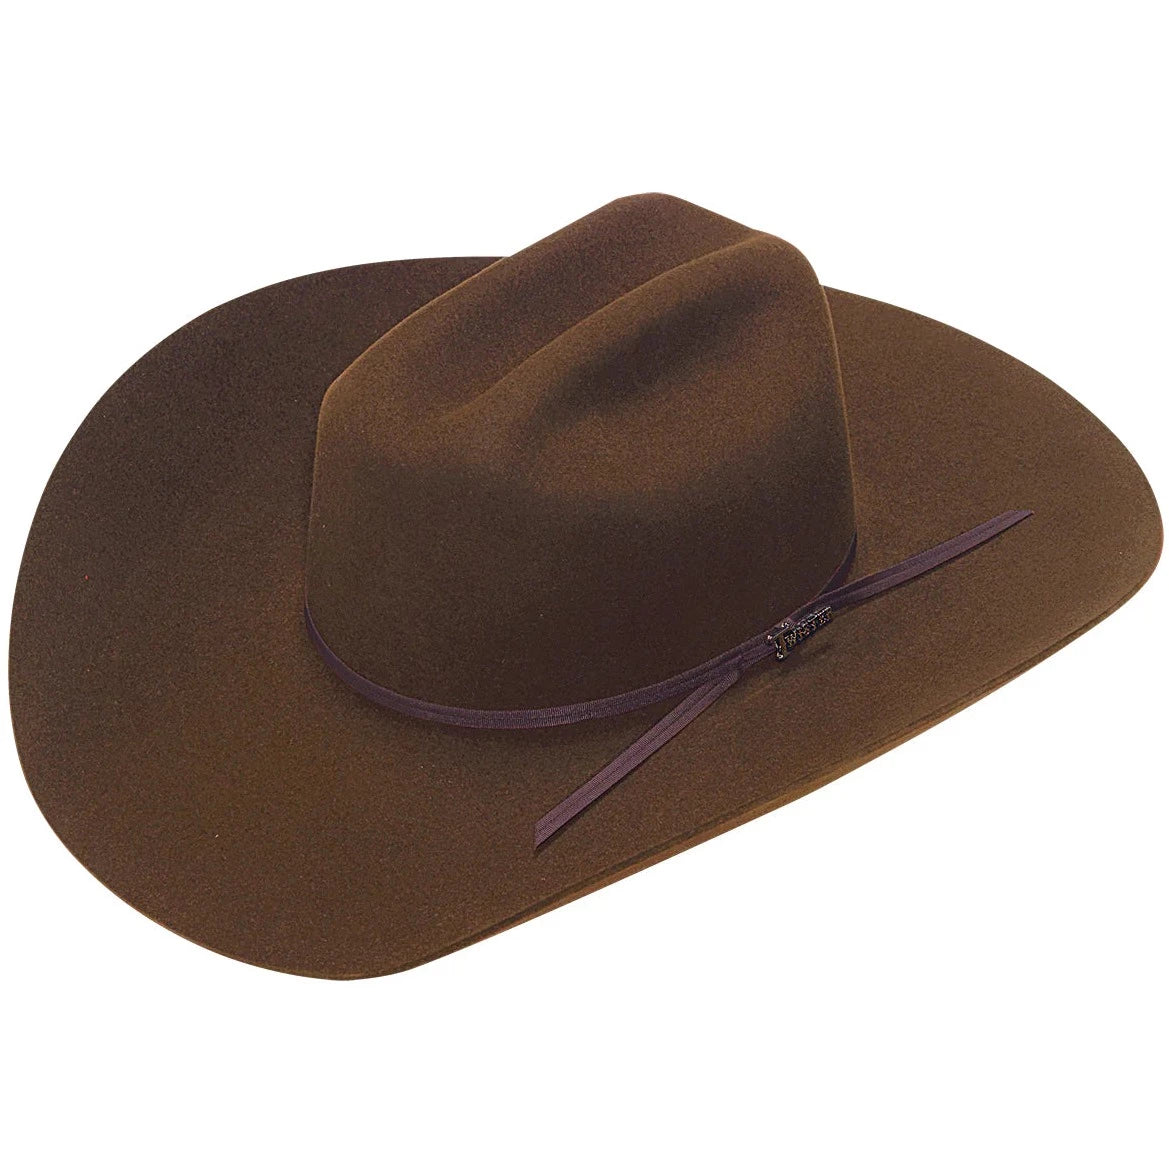 Twister 6X Brown Fur Felt Hat